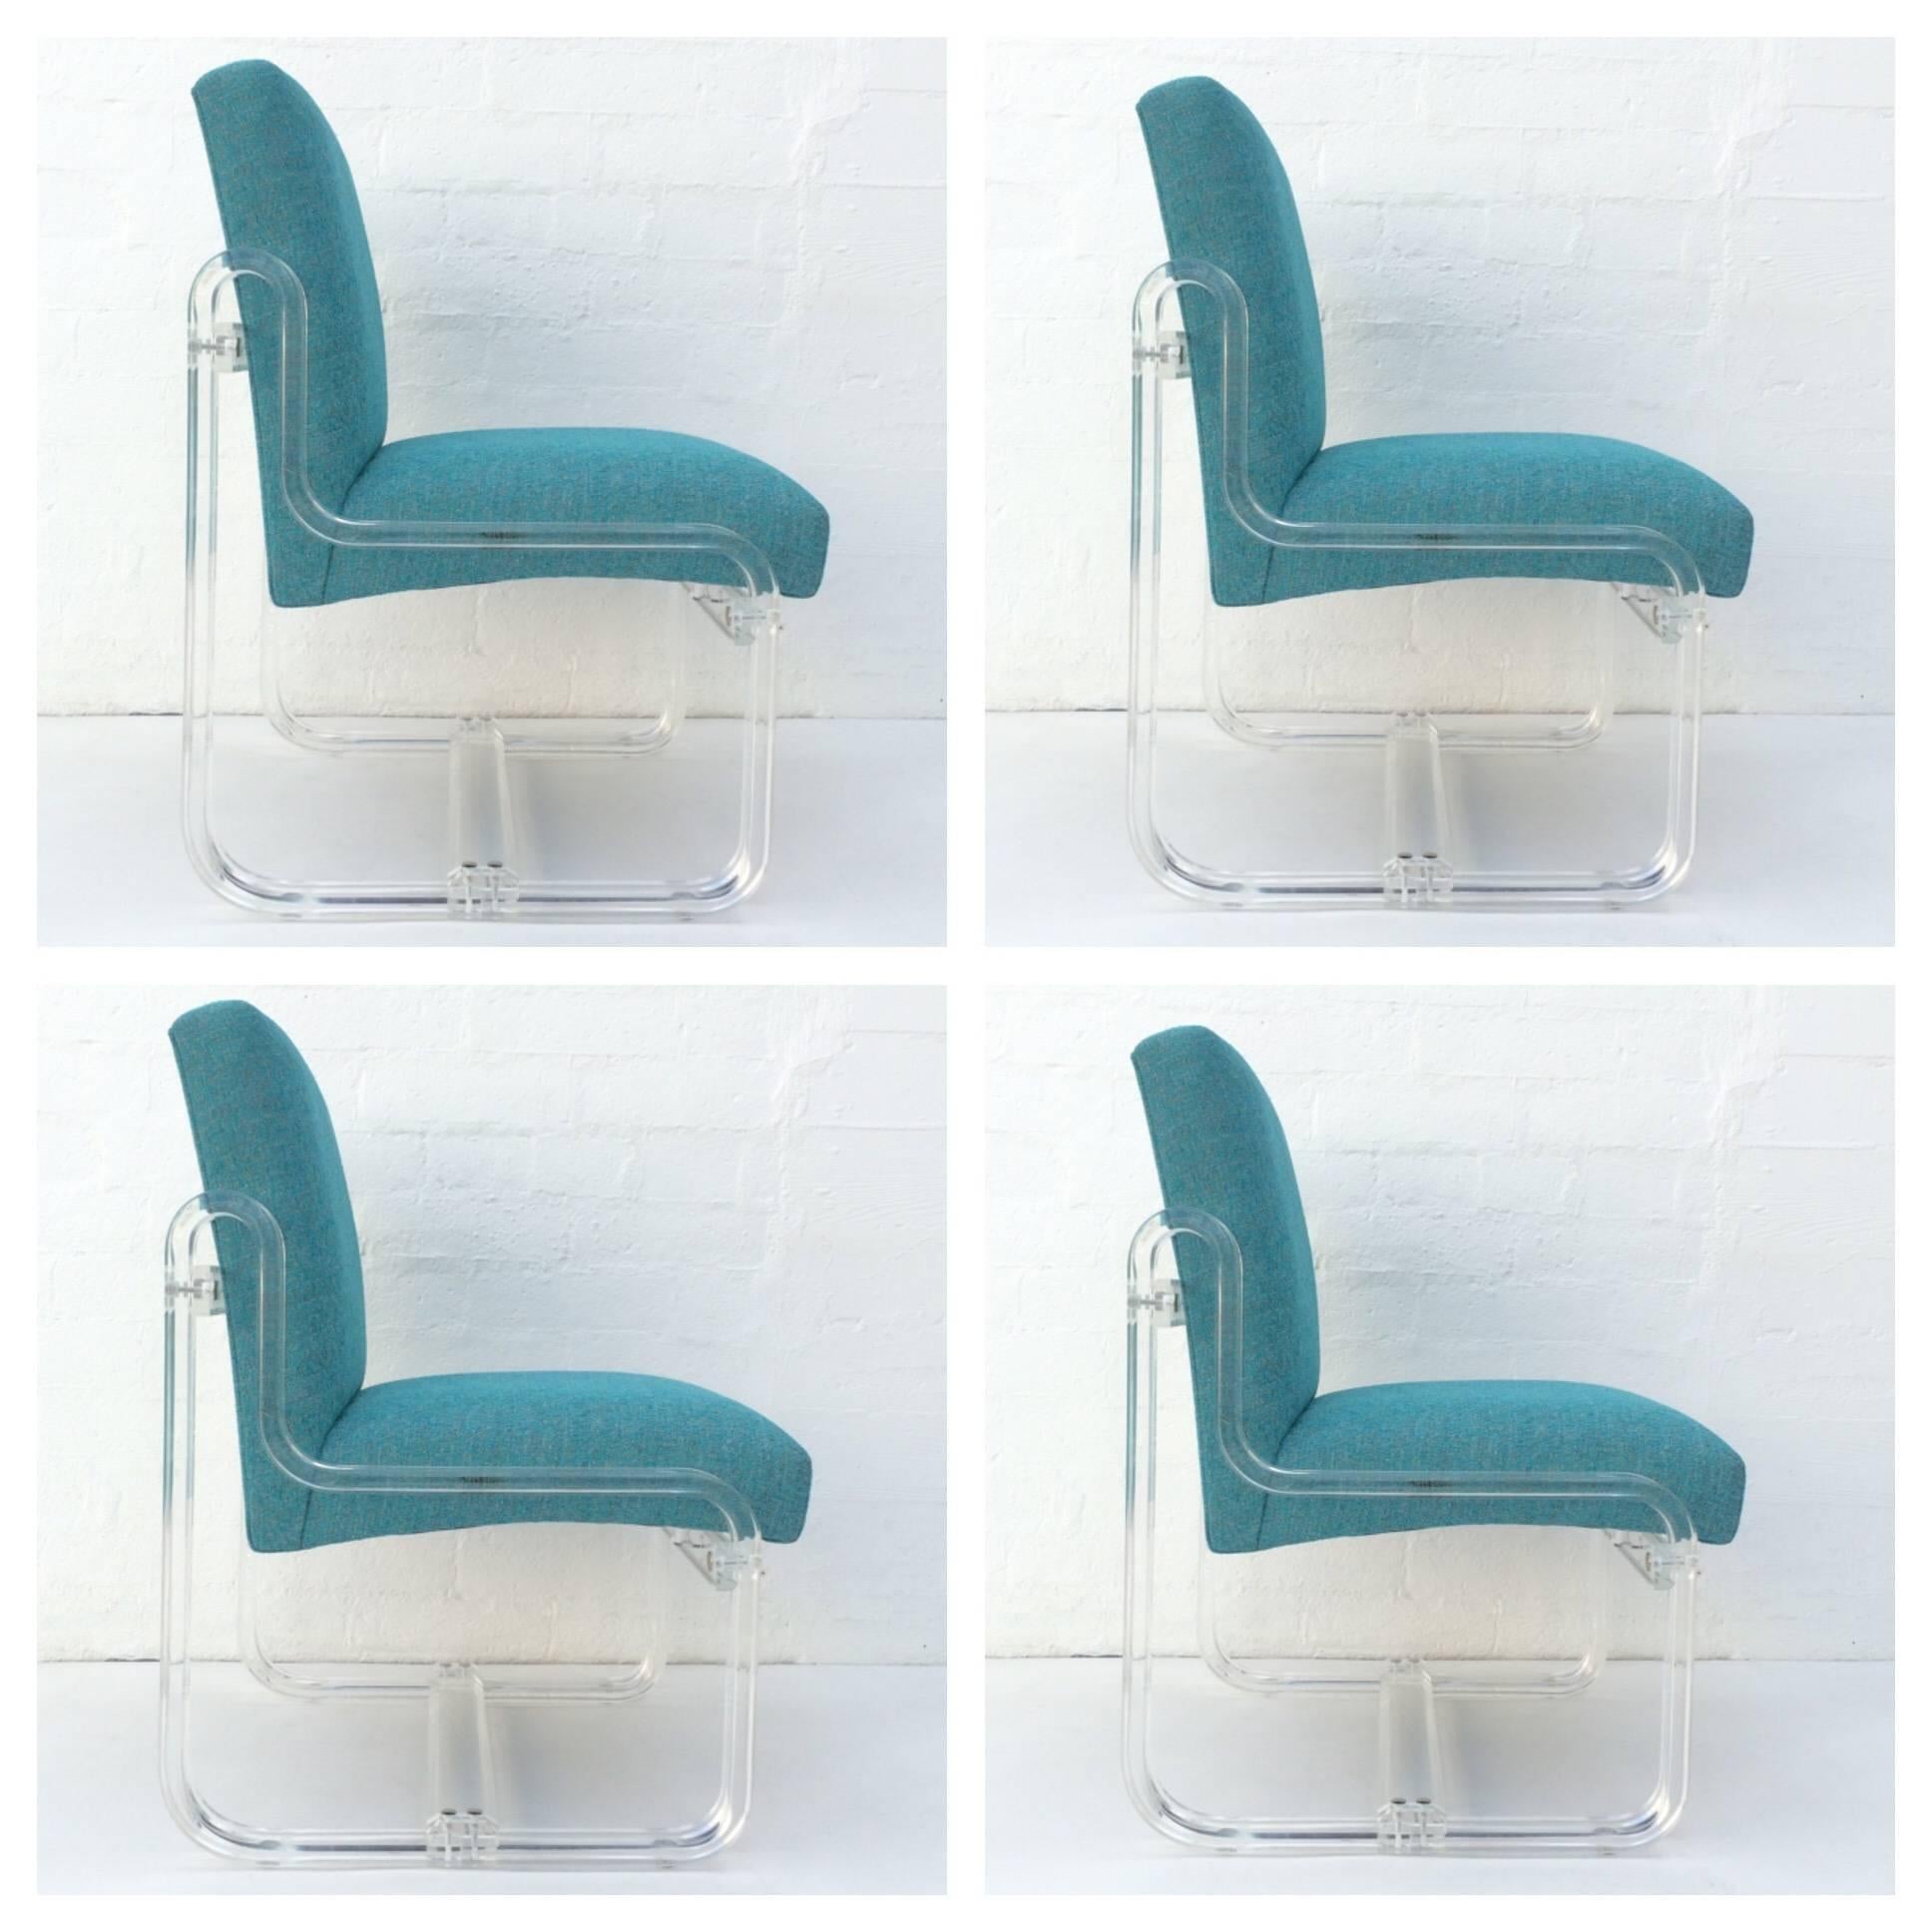 Ensemble de quatre chaises de salle à manger en acrylique nouvellement retapissées dans un tissu bleu aqua avec de légers tons gris.
L'acrylique a été polie professionnellement.
Fabriqué par Vivid de Los Angeles, vers les années 1980.